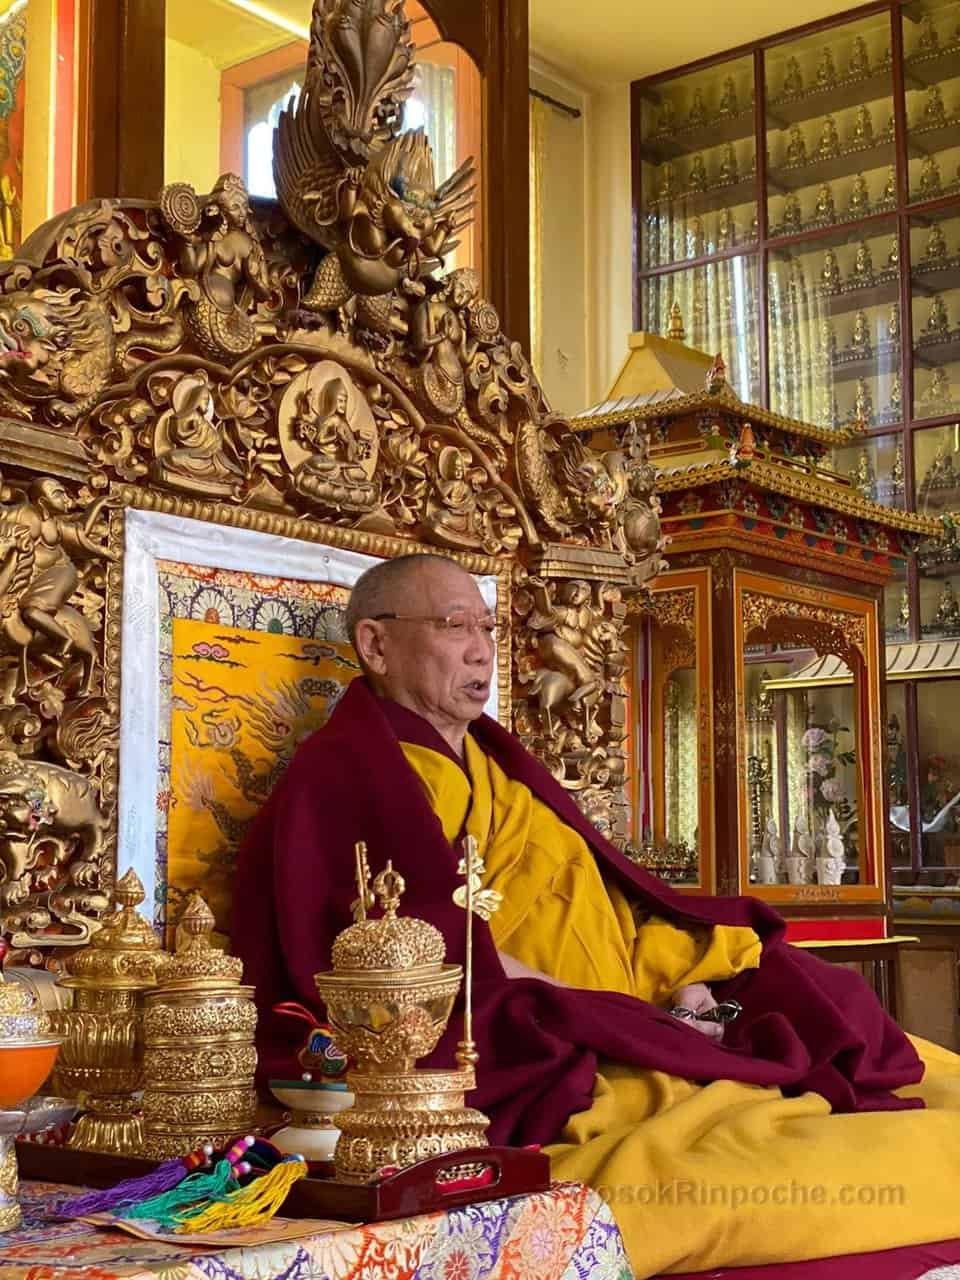 Gosok Rinpoche 2021-02-09 at 11.40.01 PM